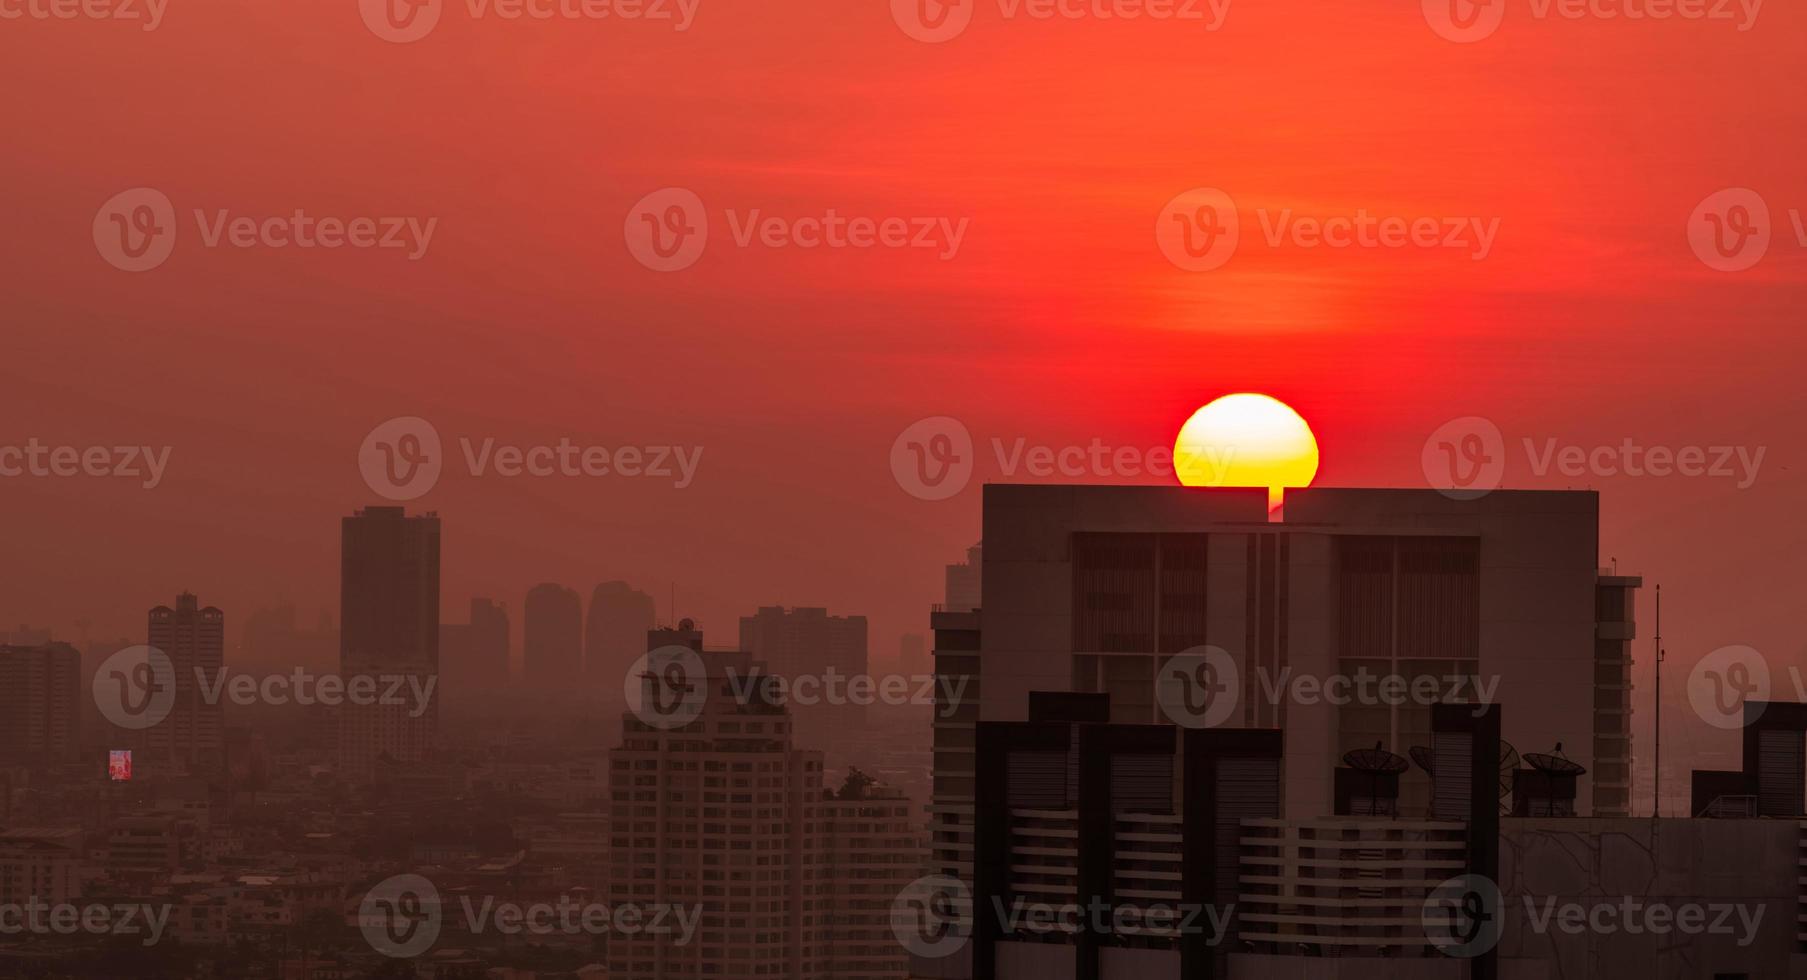 stadsgezicht in de ochtend met zonsopganghemel en luchtvervuiling. fijnstof van pm 2.5 dekken stad. stadsgezicht met overvol woongebouw. stedelijke zonsopgang met grote rode zon. smog in de lucht. ongezond. foto